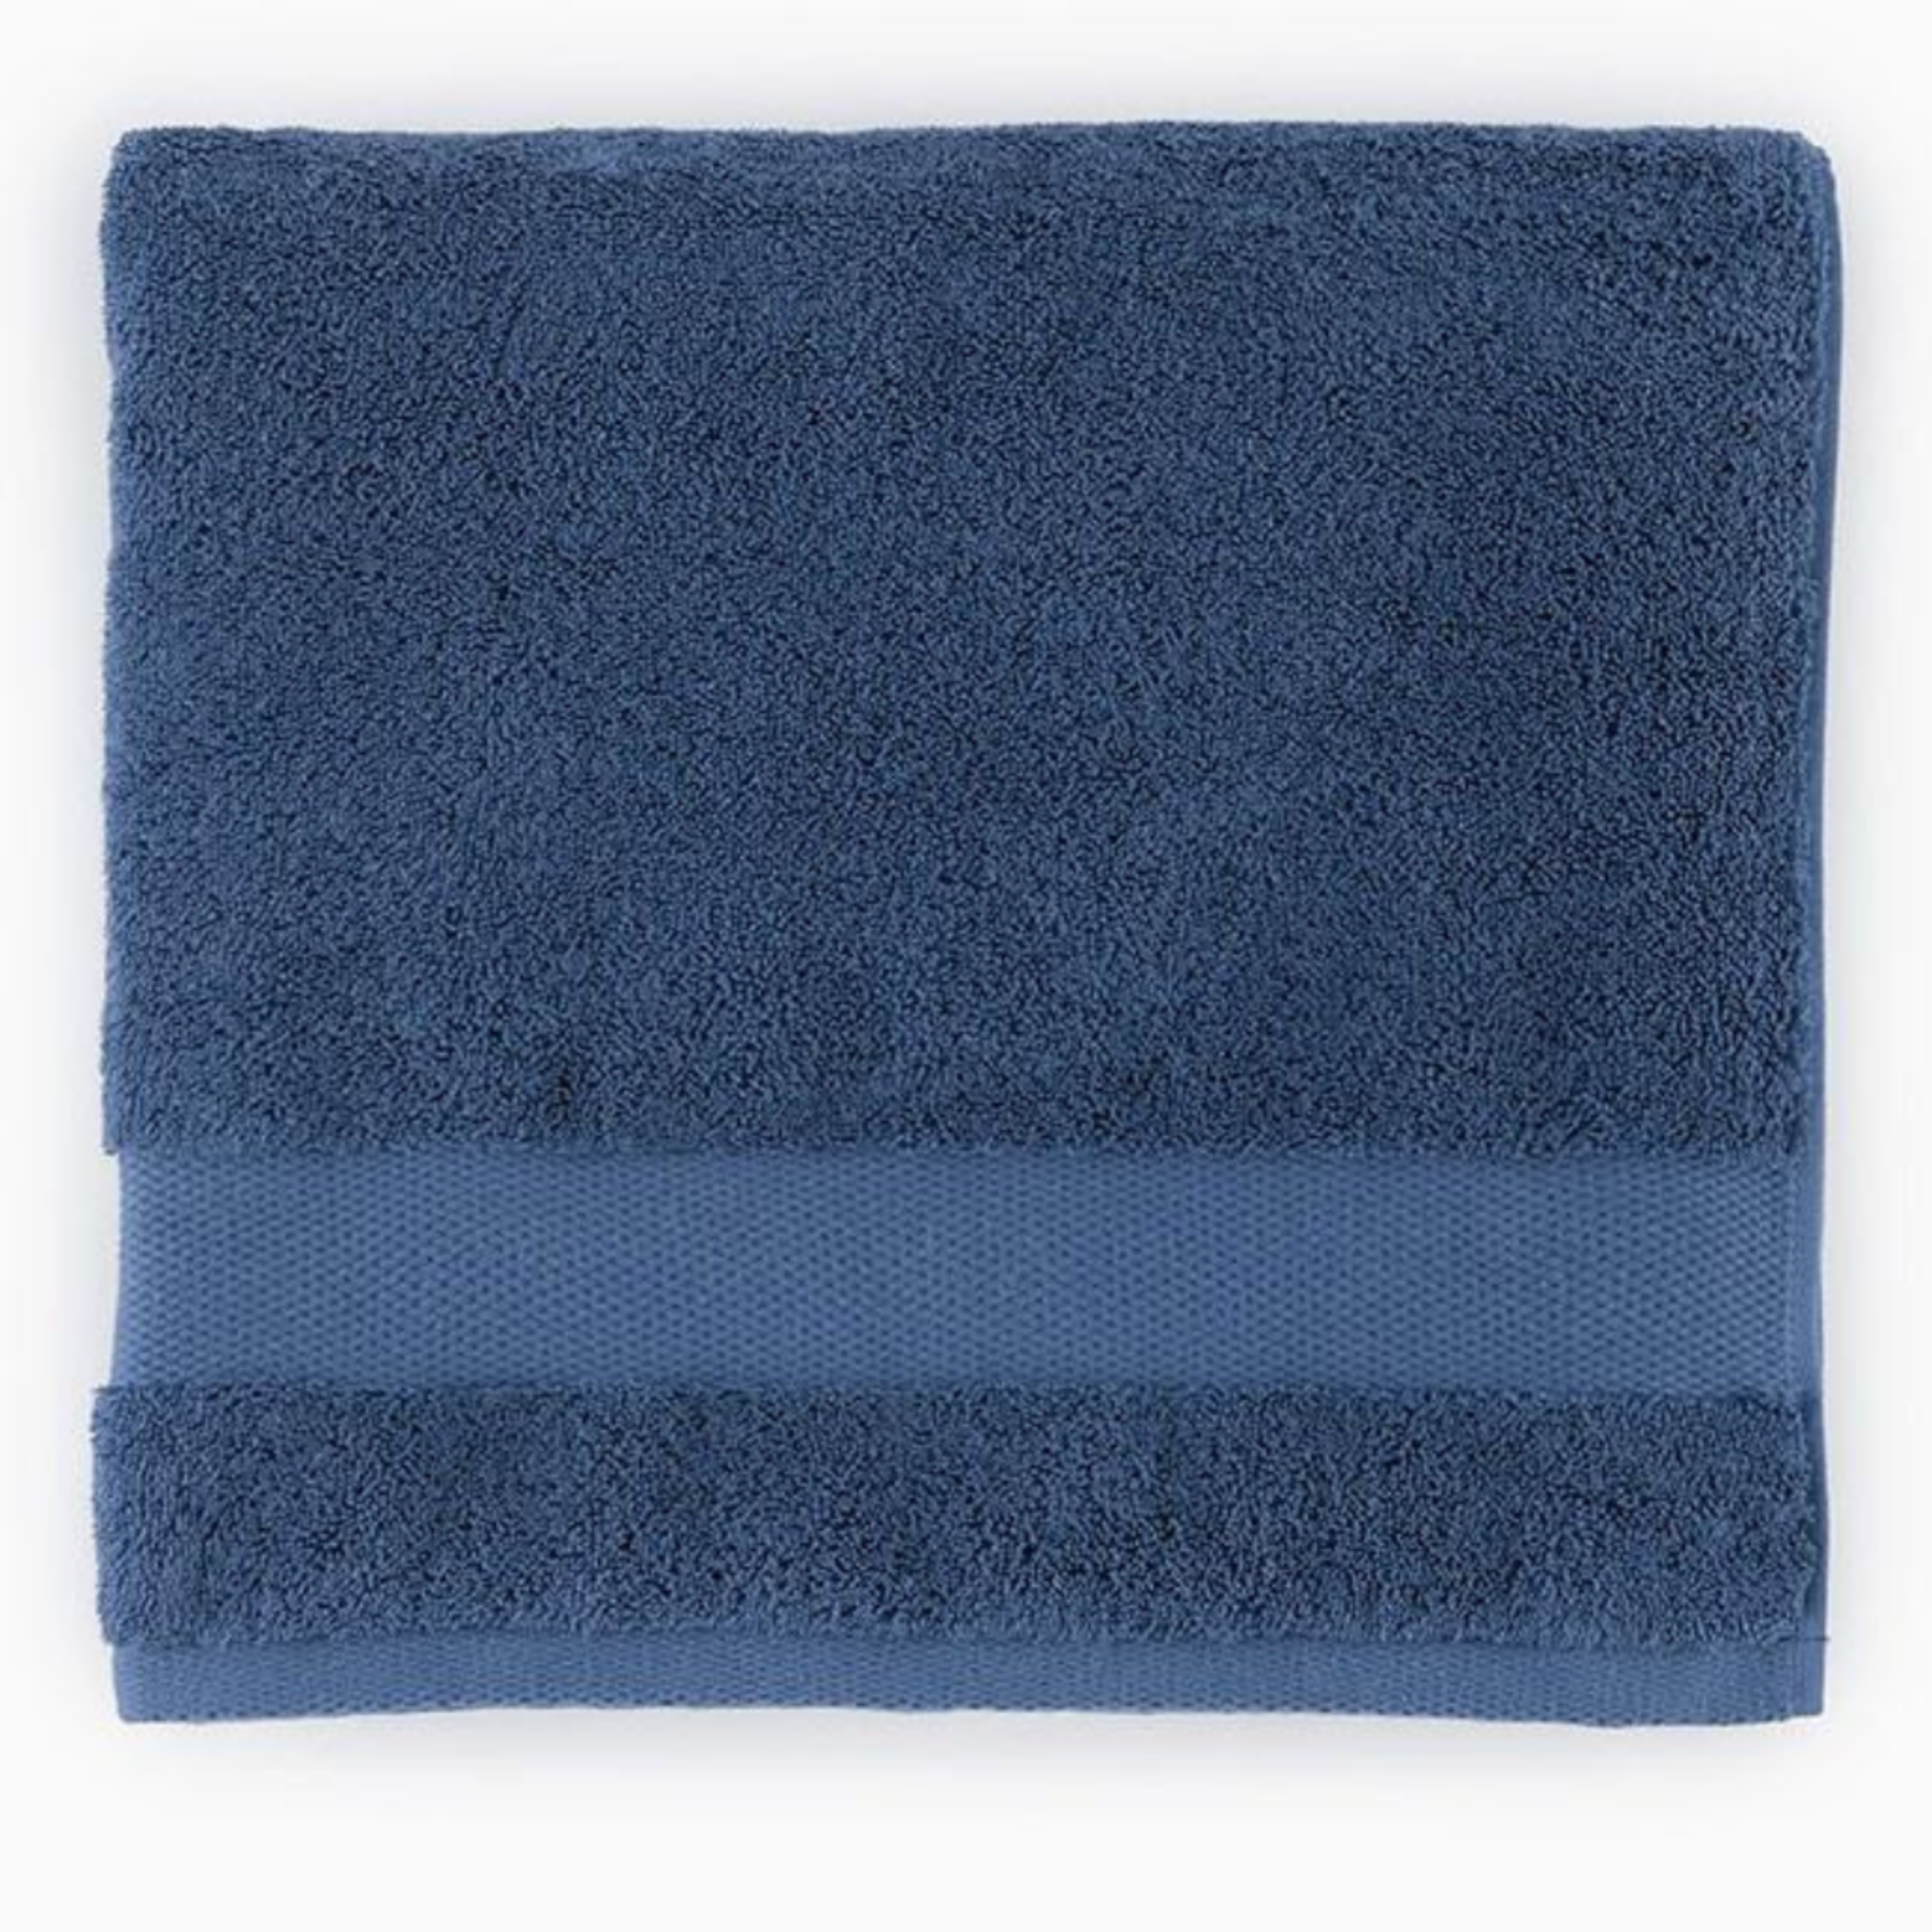 https://flandb.com/cdn/shop/products/Sferra-Bello-Bath-Towels-Navy-Main_5000x.png?v=1668174761